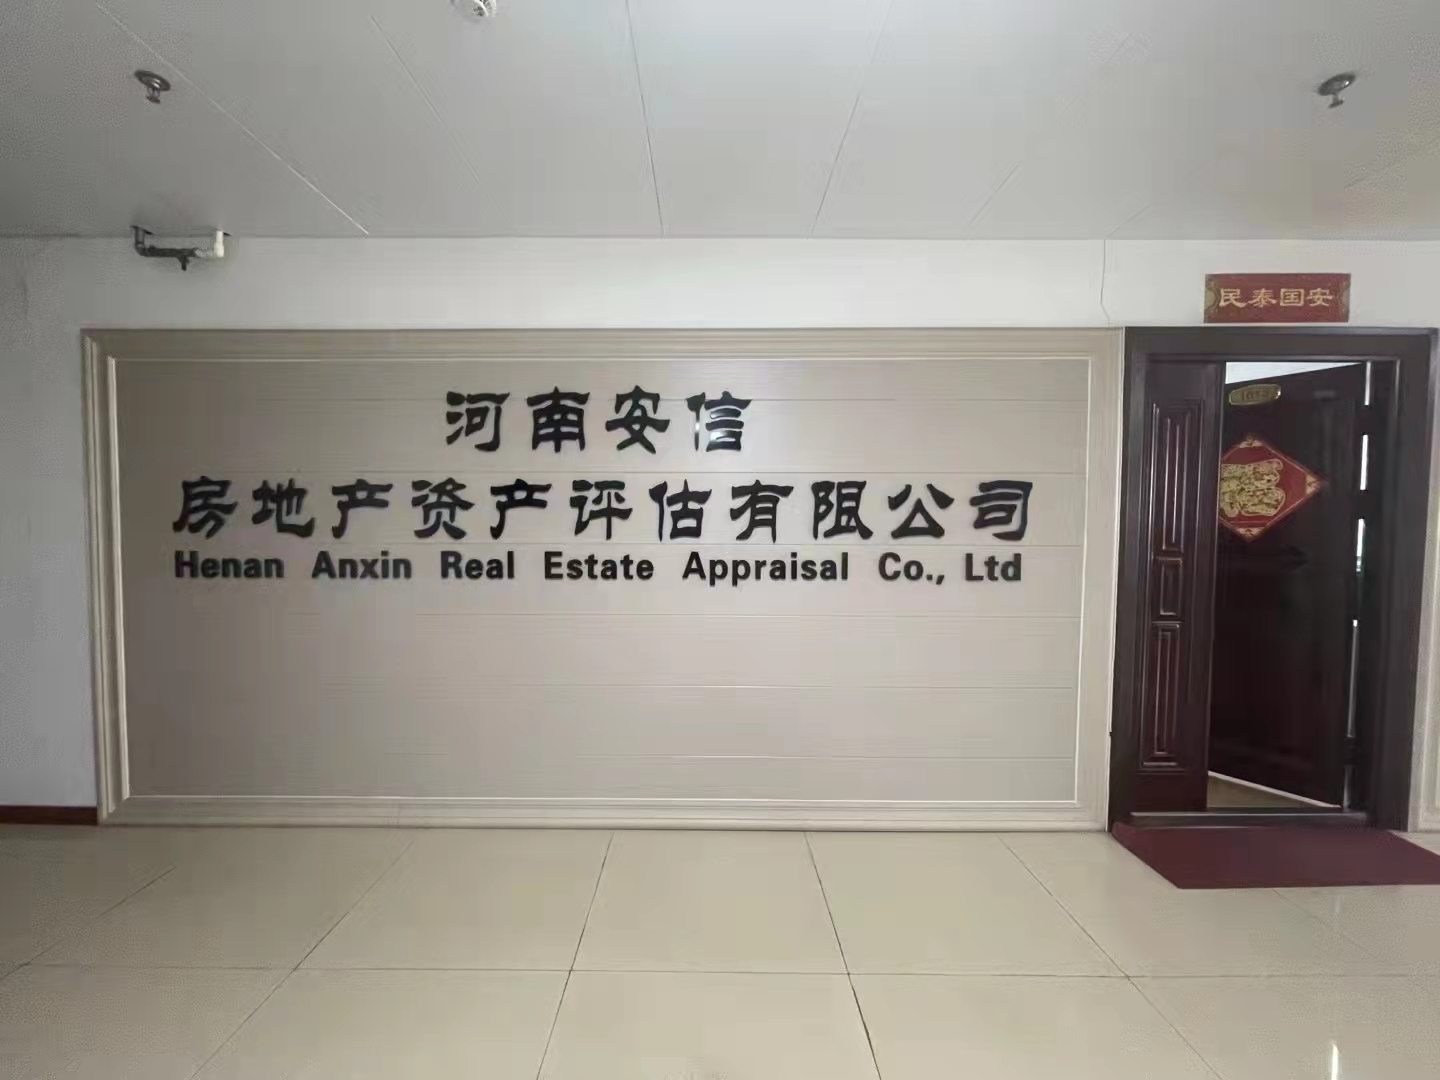 河南安信房地产资产评估有限公司